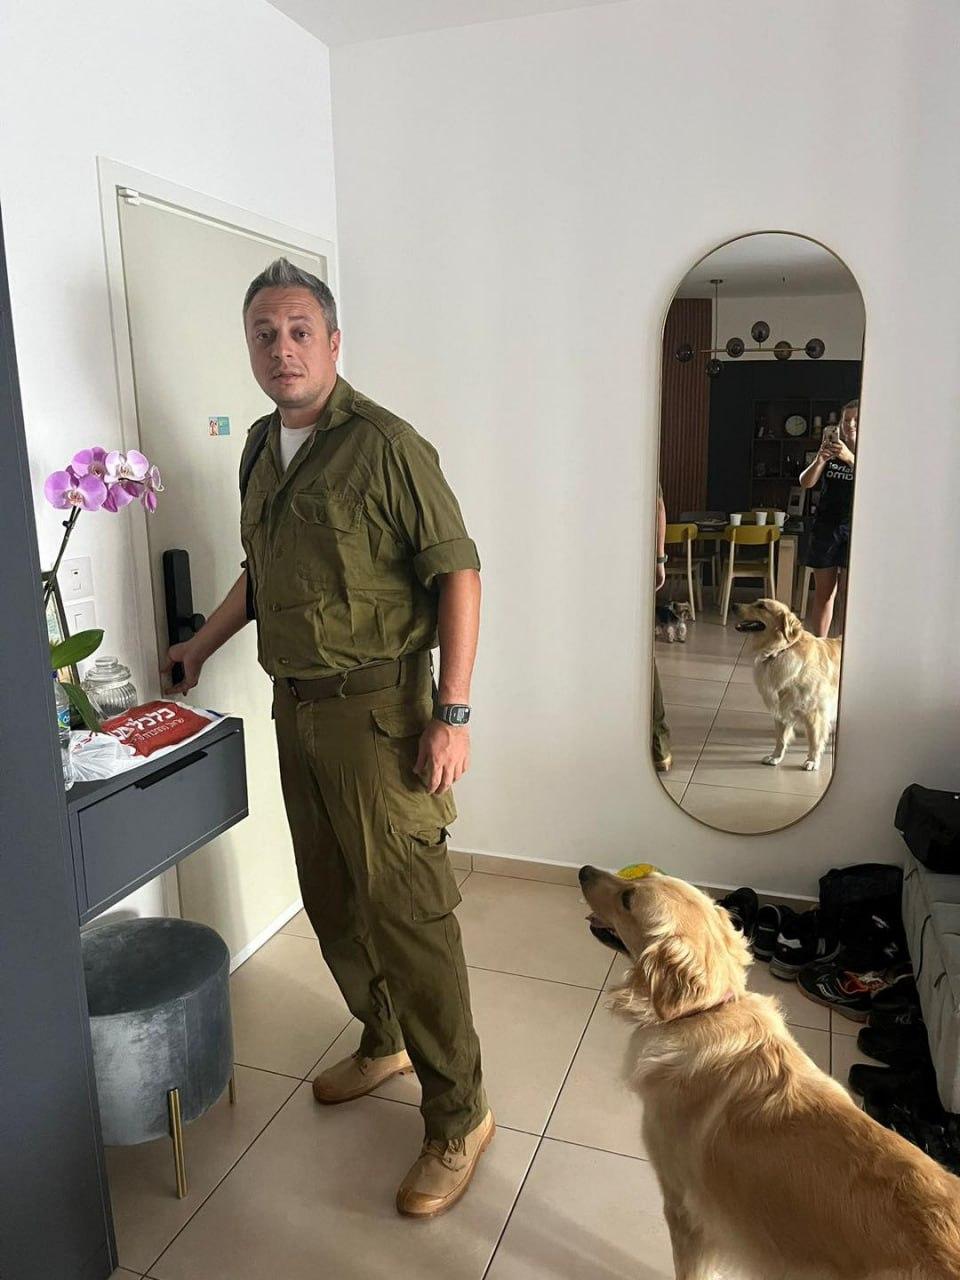 Илья Аксельрод служит в Командовании тыла – в войсках, которые работают с гражданским населением / Фото с Facebook-страницы Ильи Аксельрода